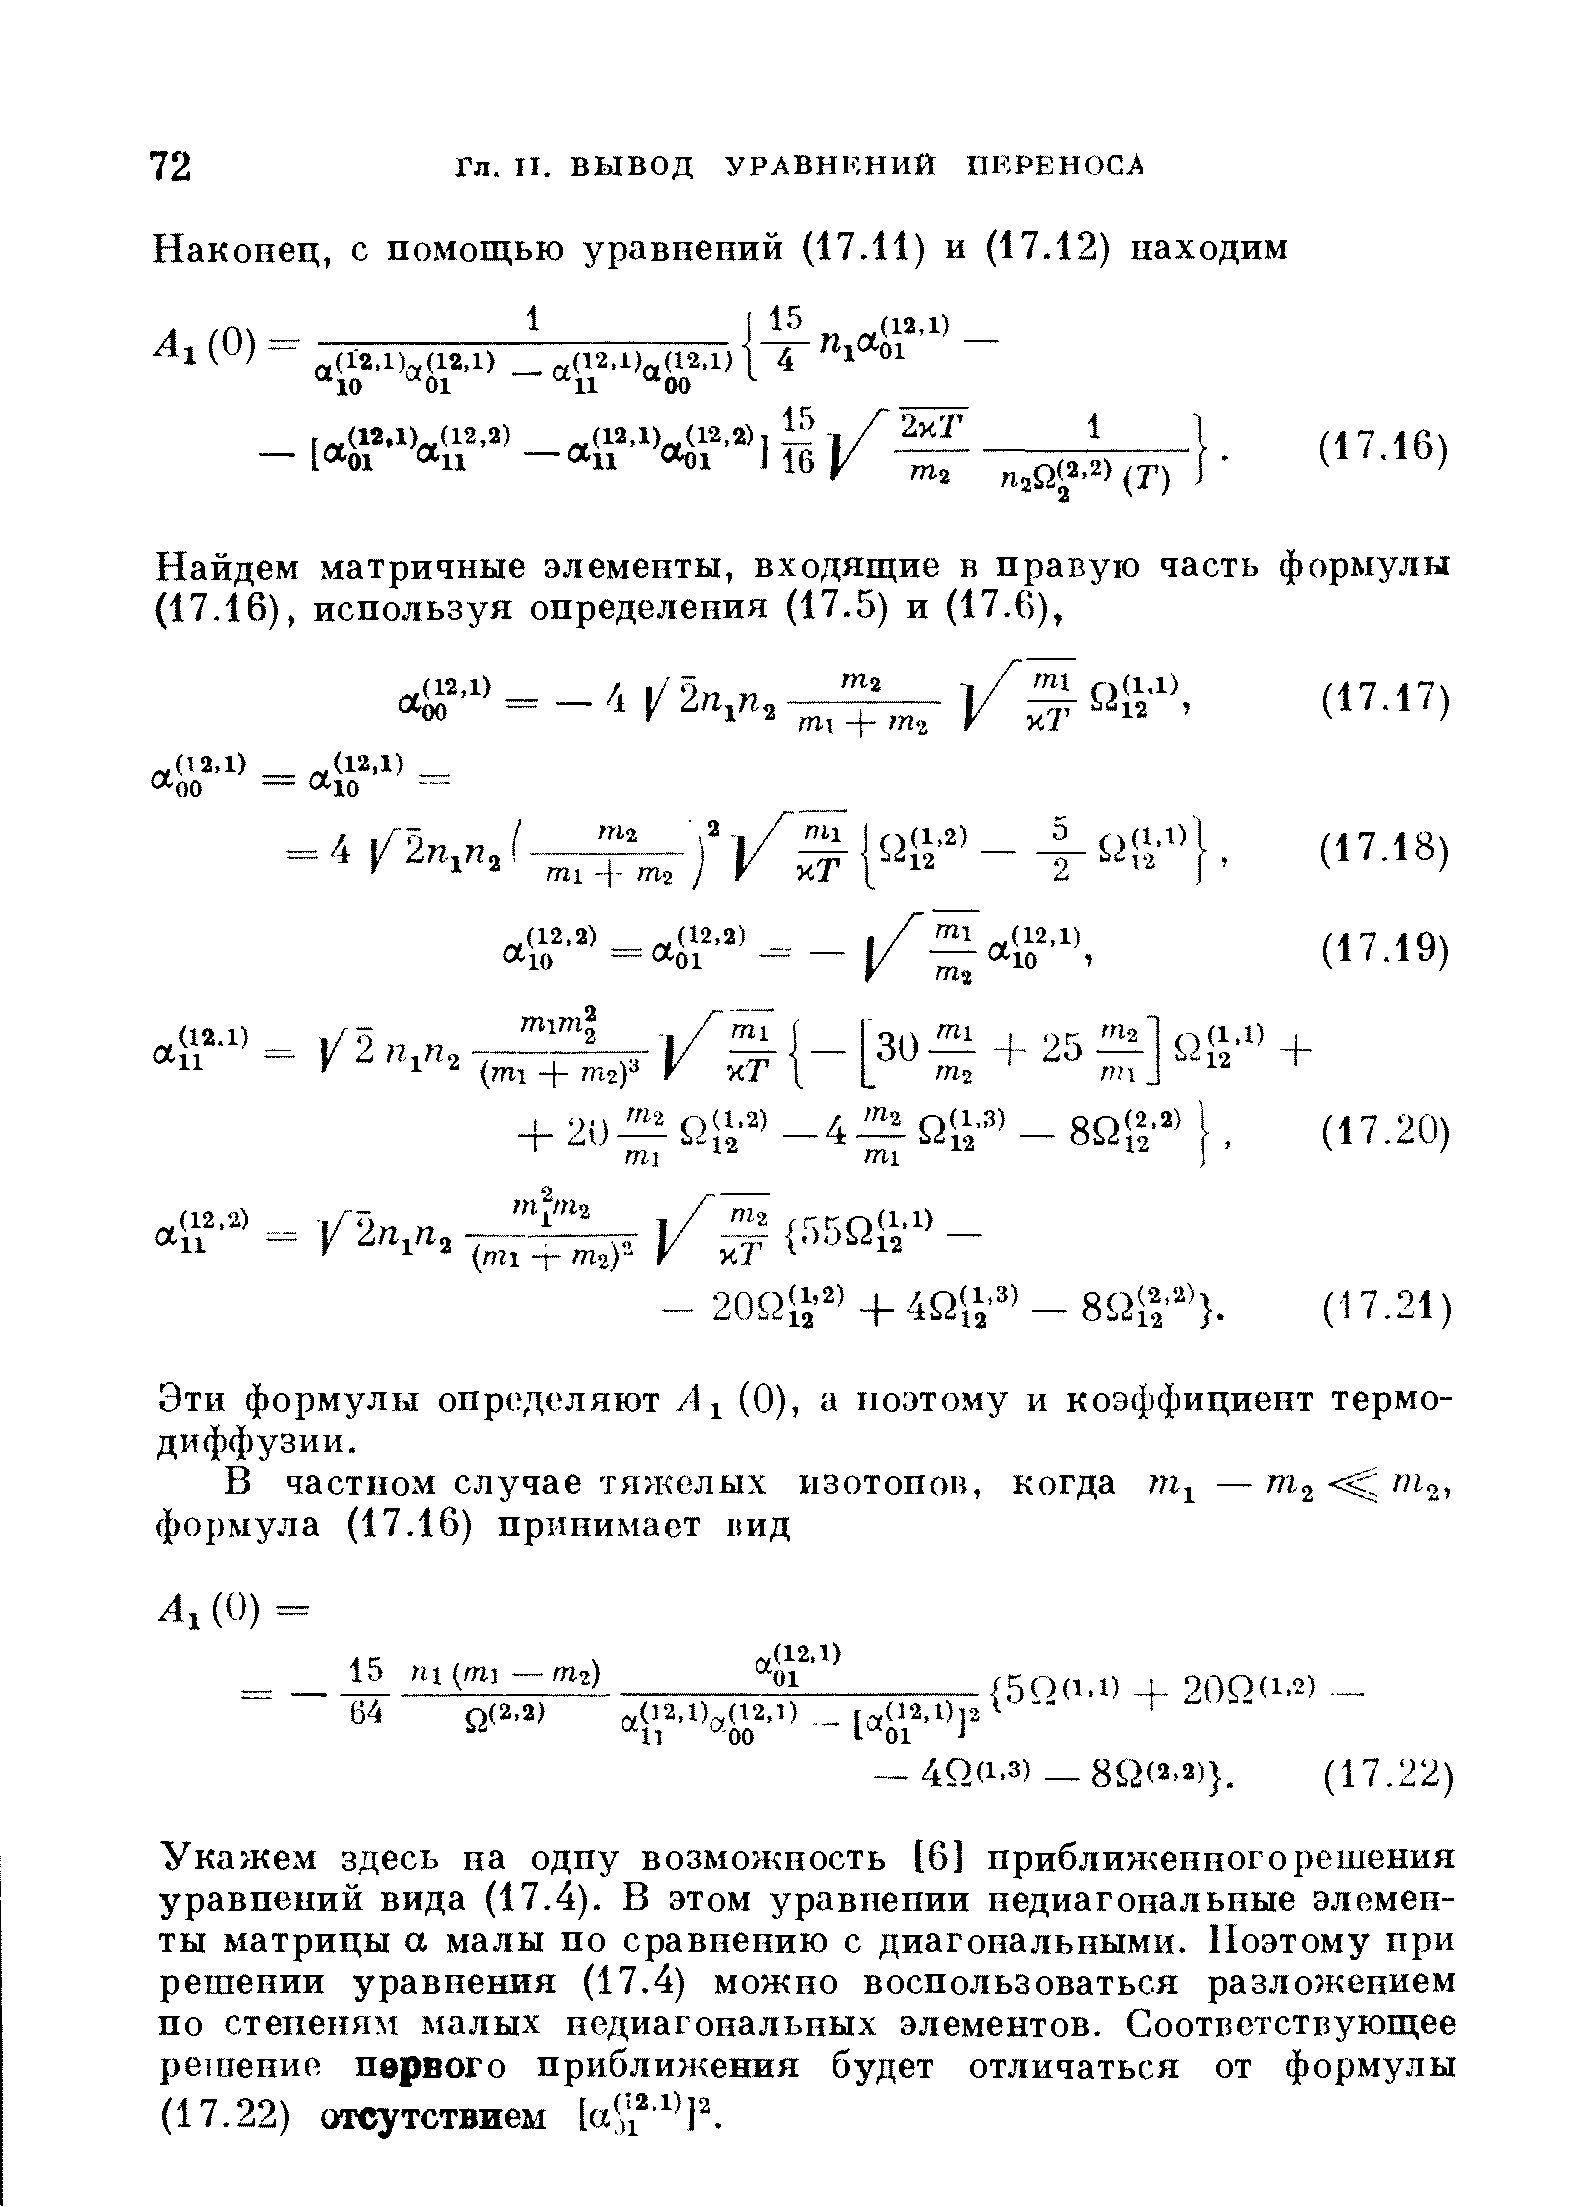 Эти формулы определяют А, (0), а поэтому и коэффициент термодиффузии.
